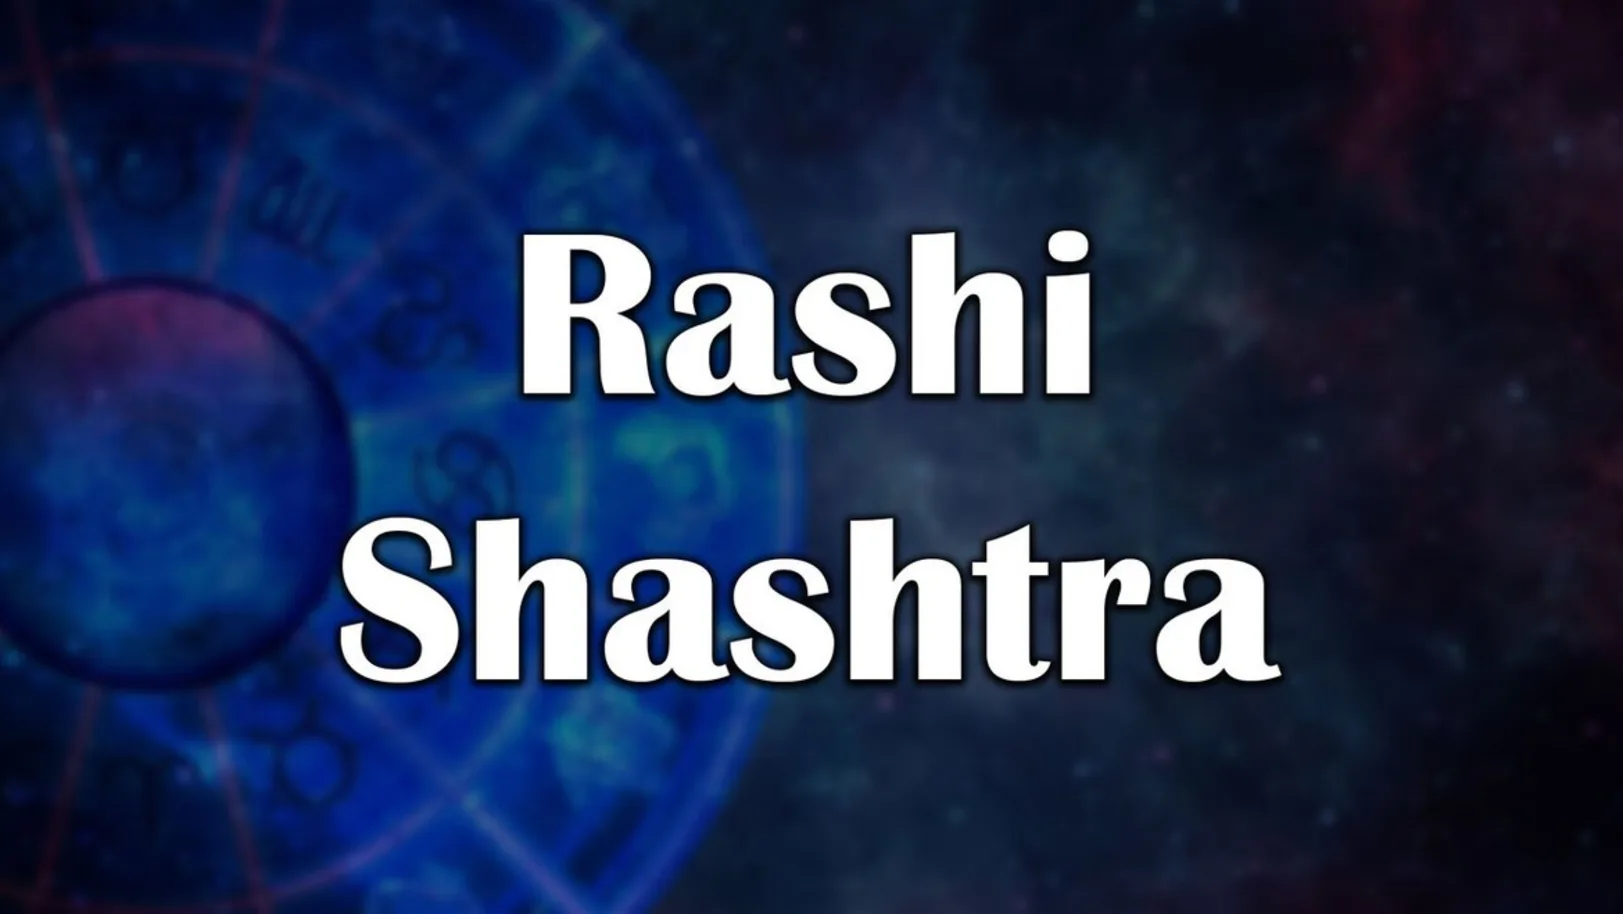 Rashi Shashtra Streaming Now On Zee Marathi HD